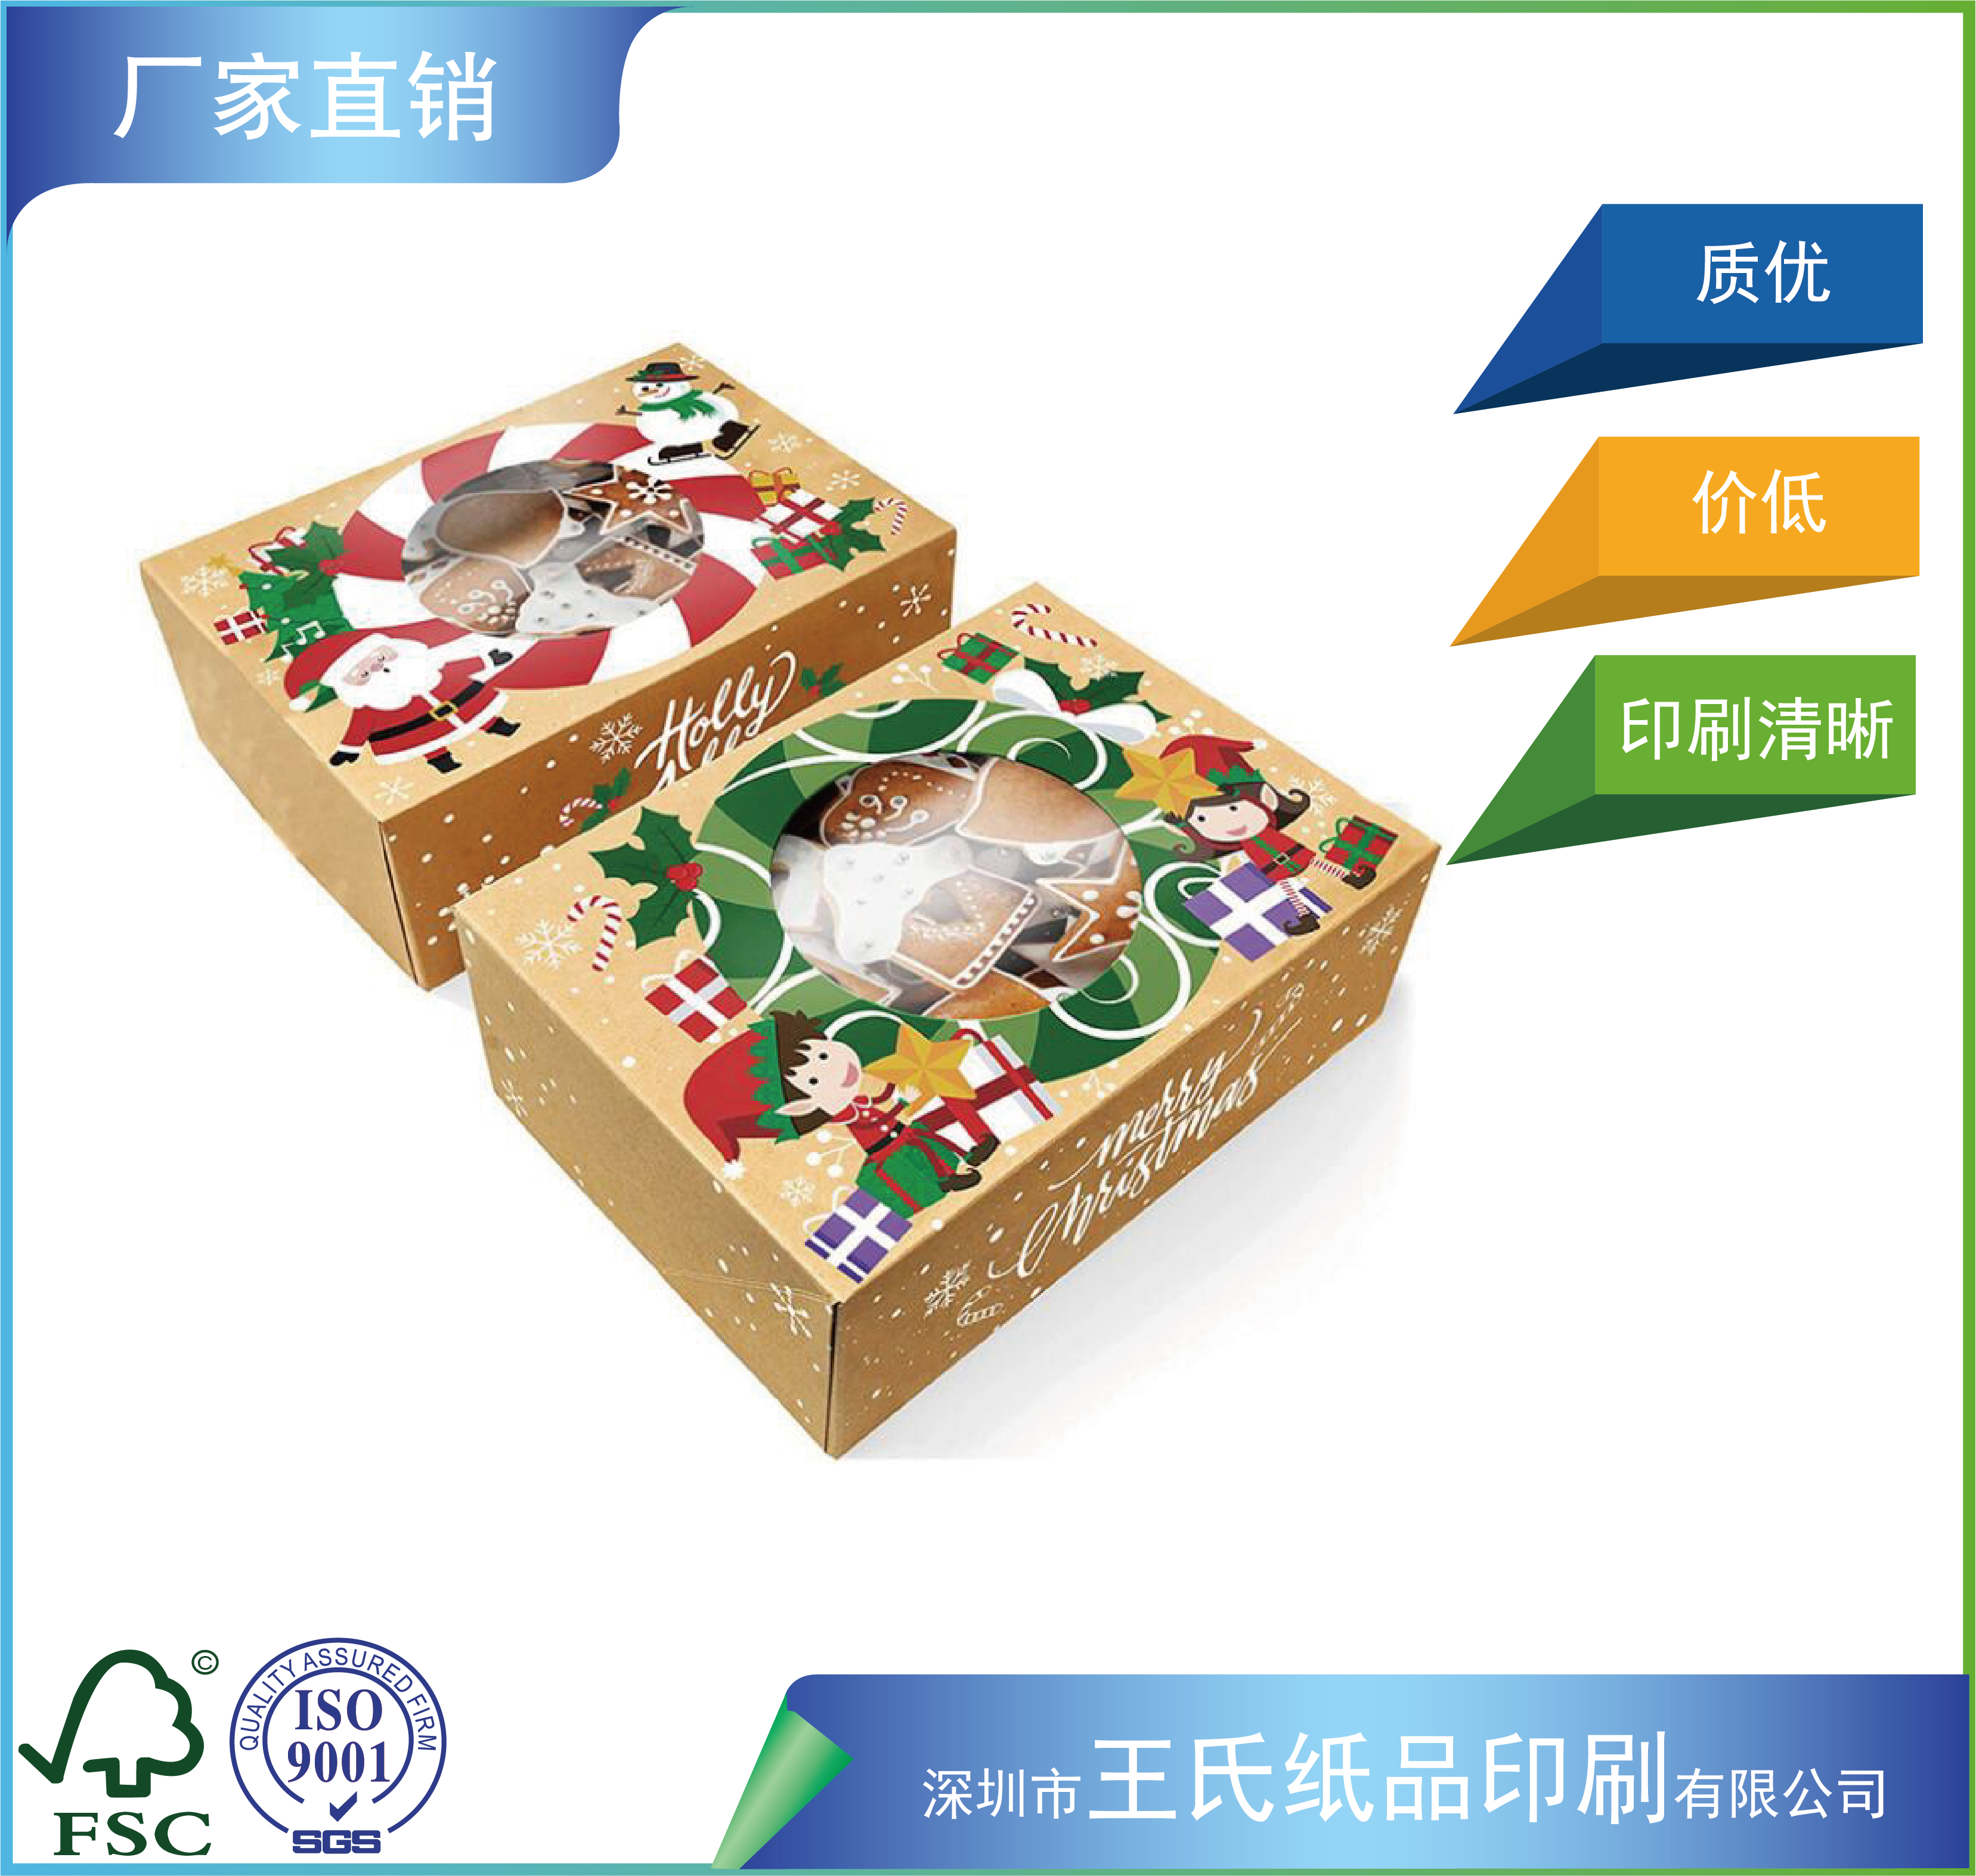 彩盒彩箱水果包装盒农产品包装盒礼盒手工盒加工制造